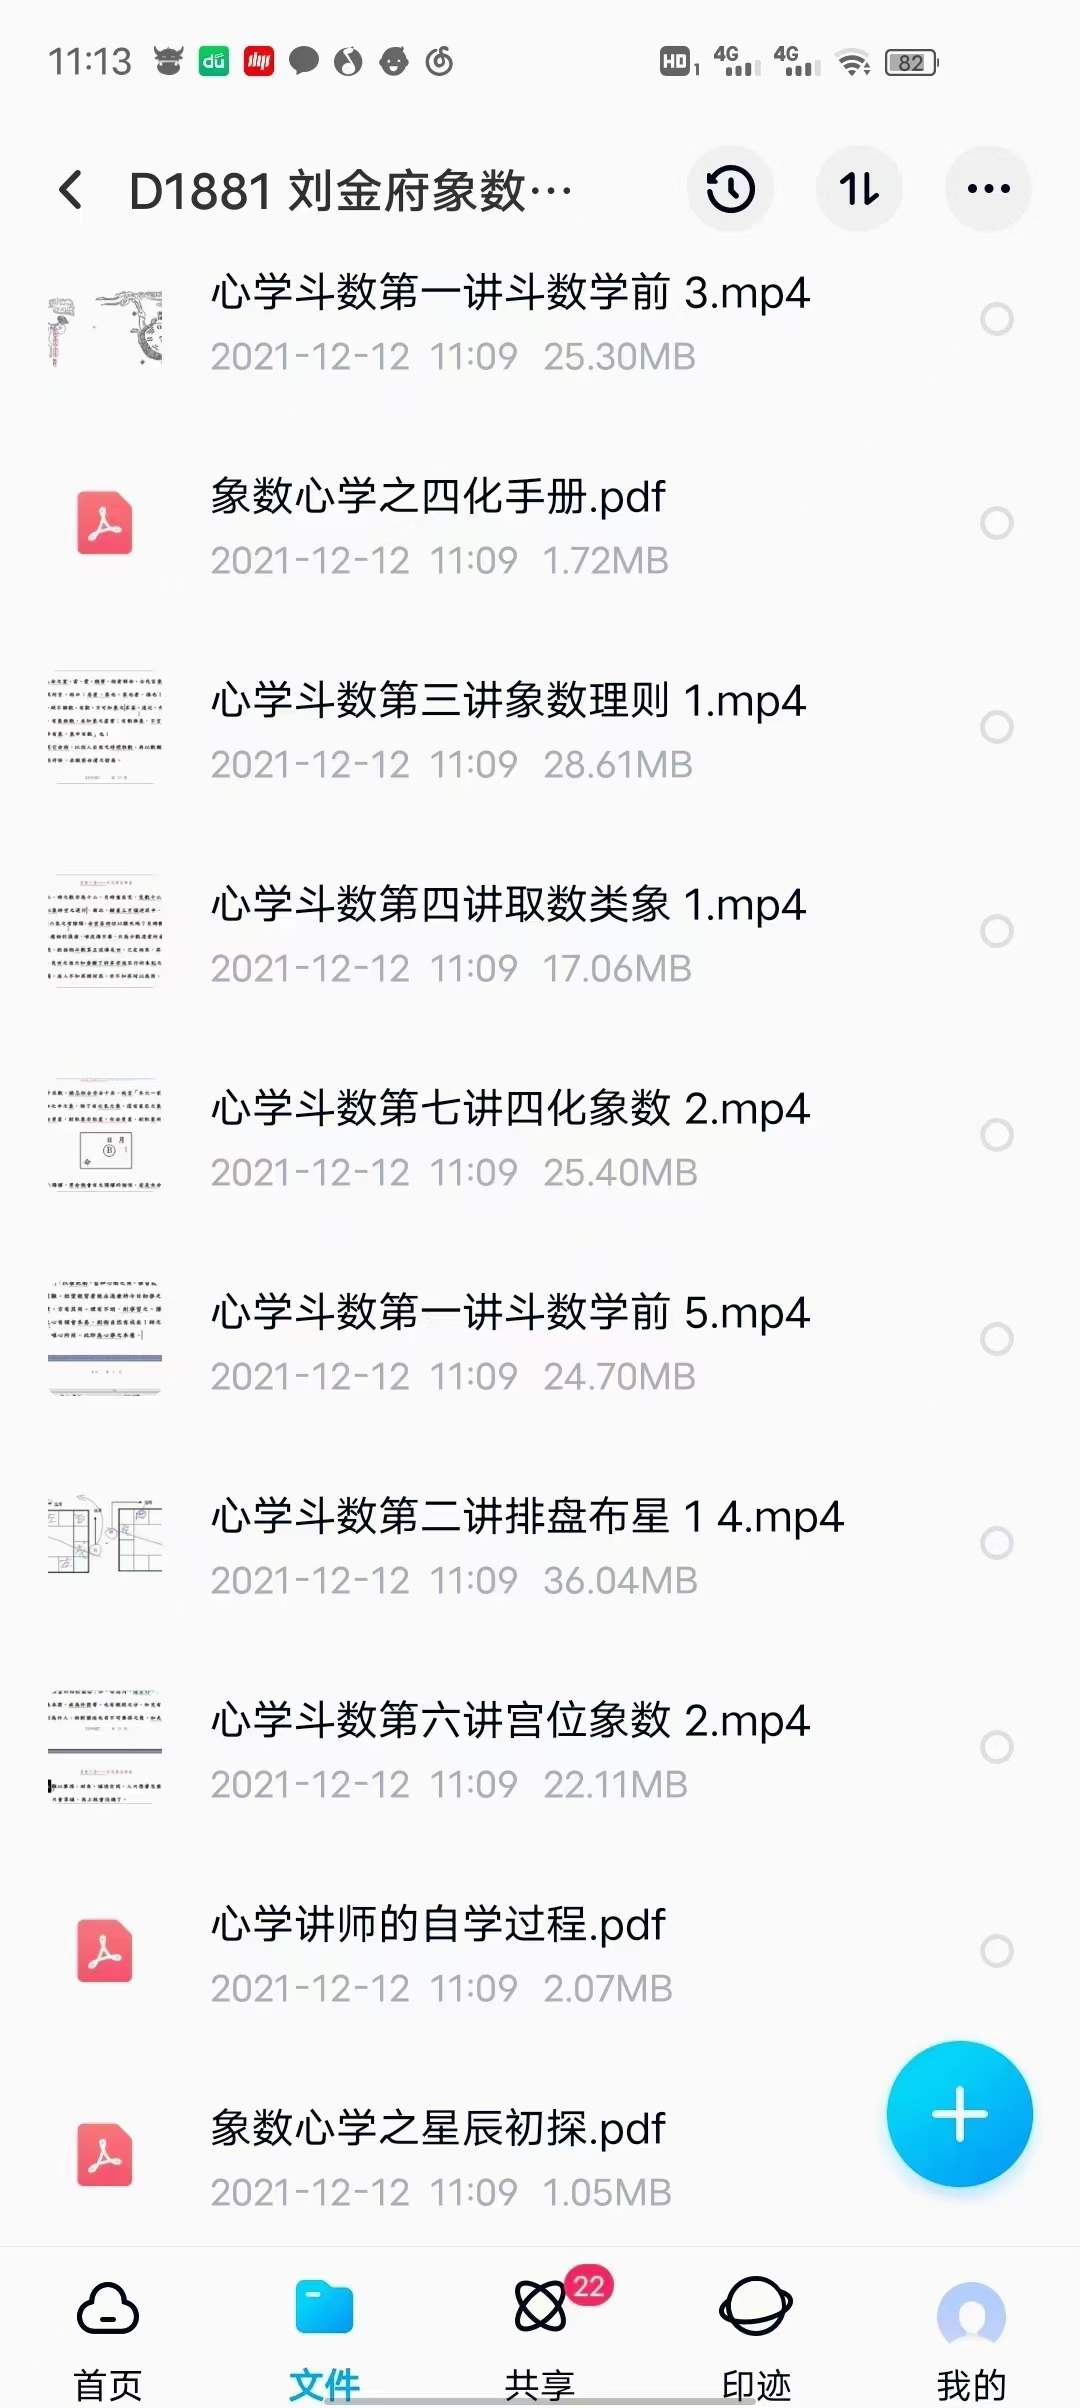 刘金府象数心学紫薇斗数 视频+录音+文档 百度网盘下载(图4)